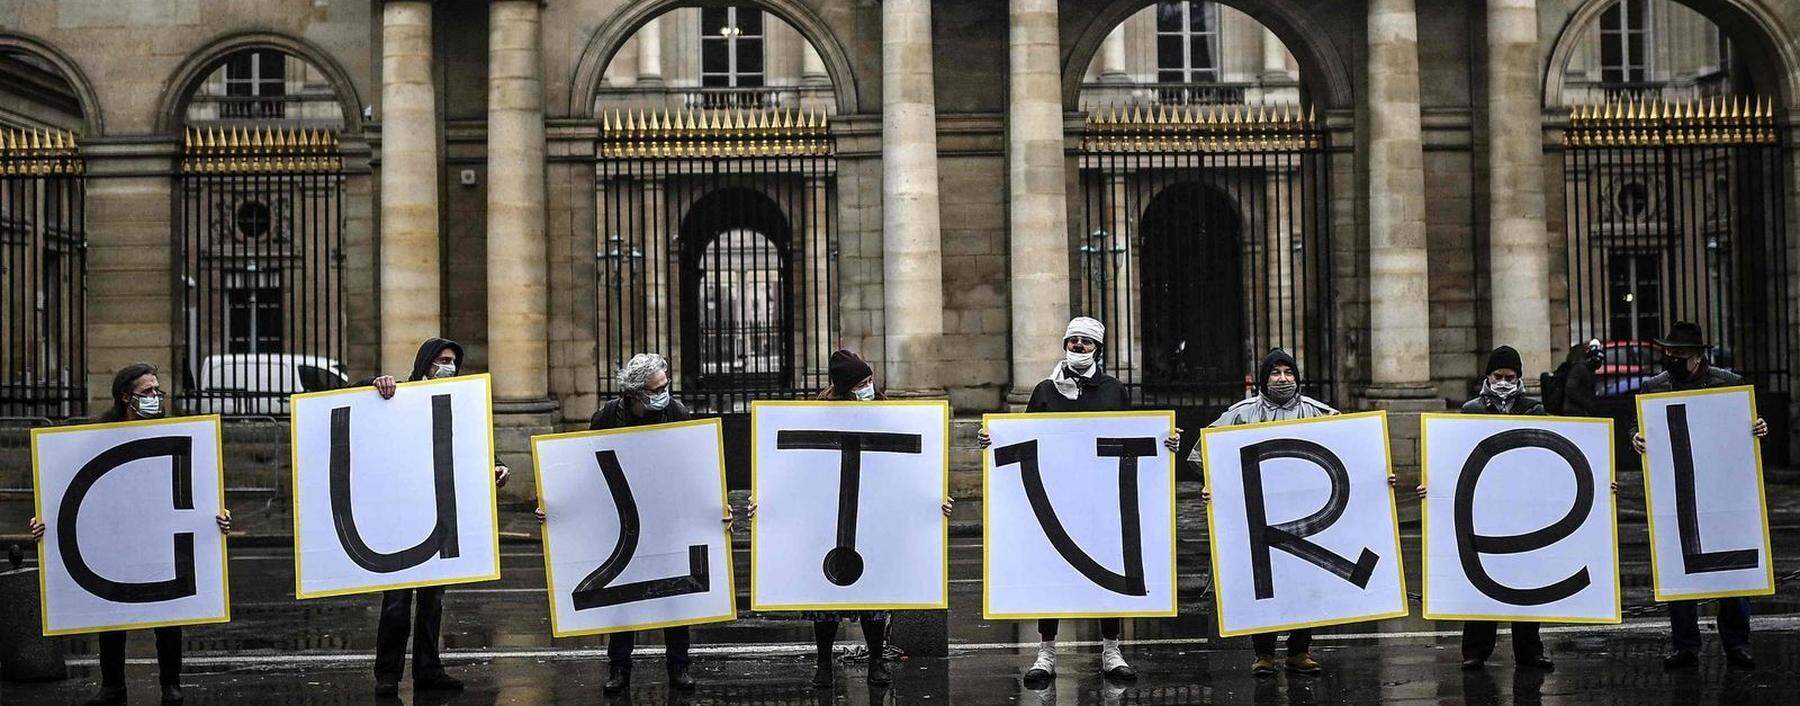 Allerorten wehren sich Kulturschaffende und -freunde gegen die massiven Einschränkungen in der Covid-Pandemie. Im Bild: Demonstranten vor dem Conseil d'État in Paris. Oft beschwören sie dabei die besondere Bedeutung der Kultur.